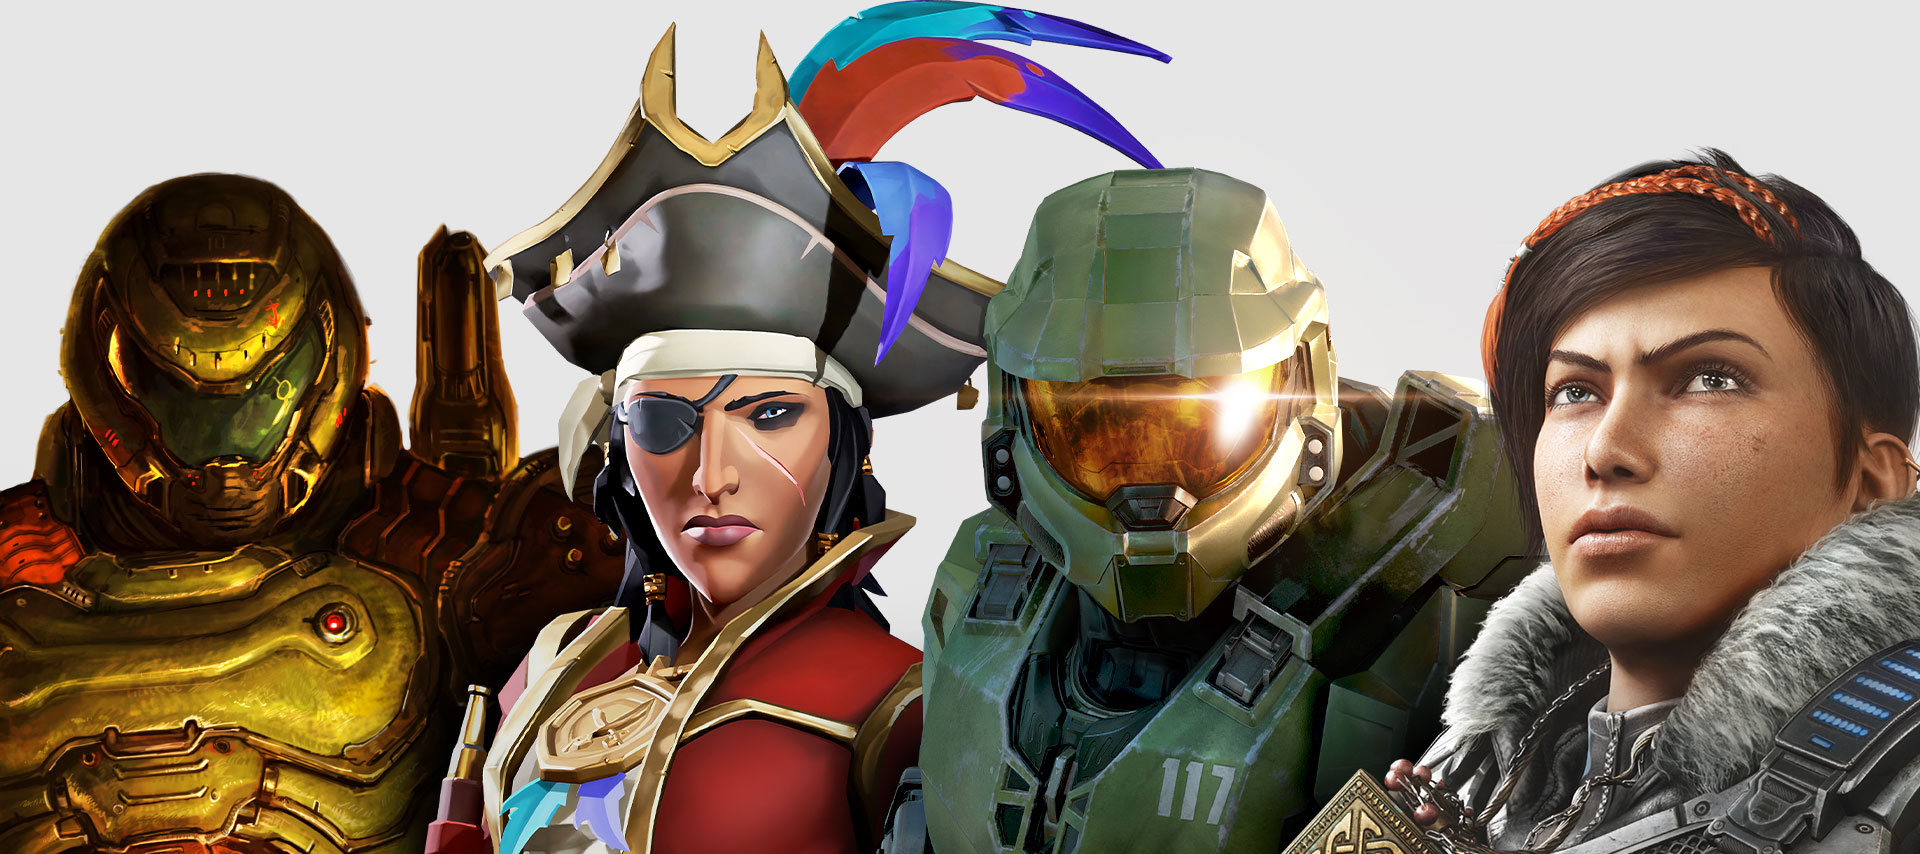 Zestaw postaci występujących w grach dostępnych w subskrypcji Xbox Game Pass. Od lewej do prawej: DOOM Eternal, Sea of Thieves, Halo: Infinite oraz Gears 5.